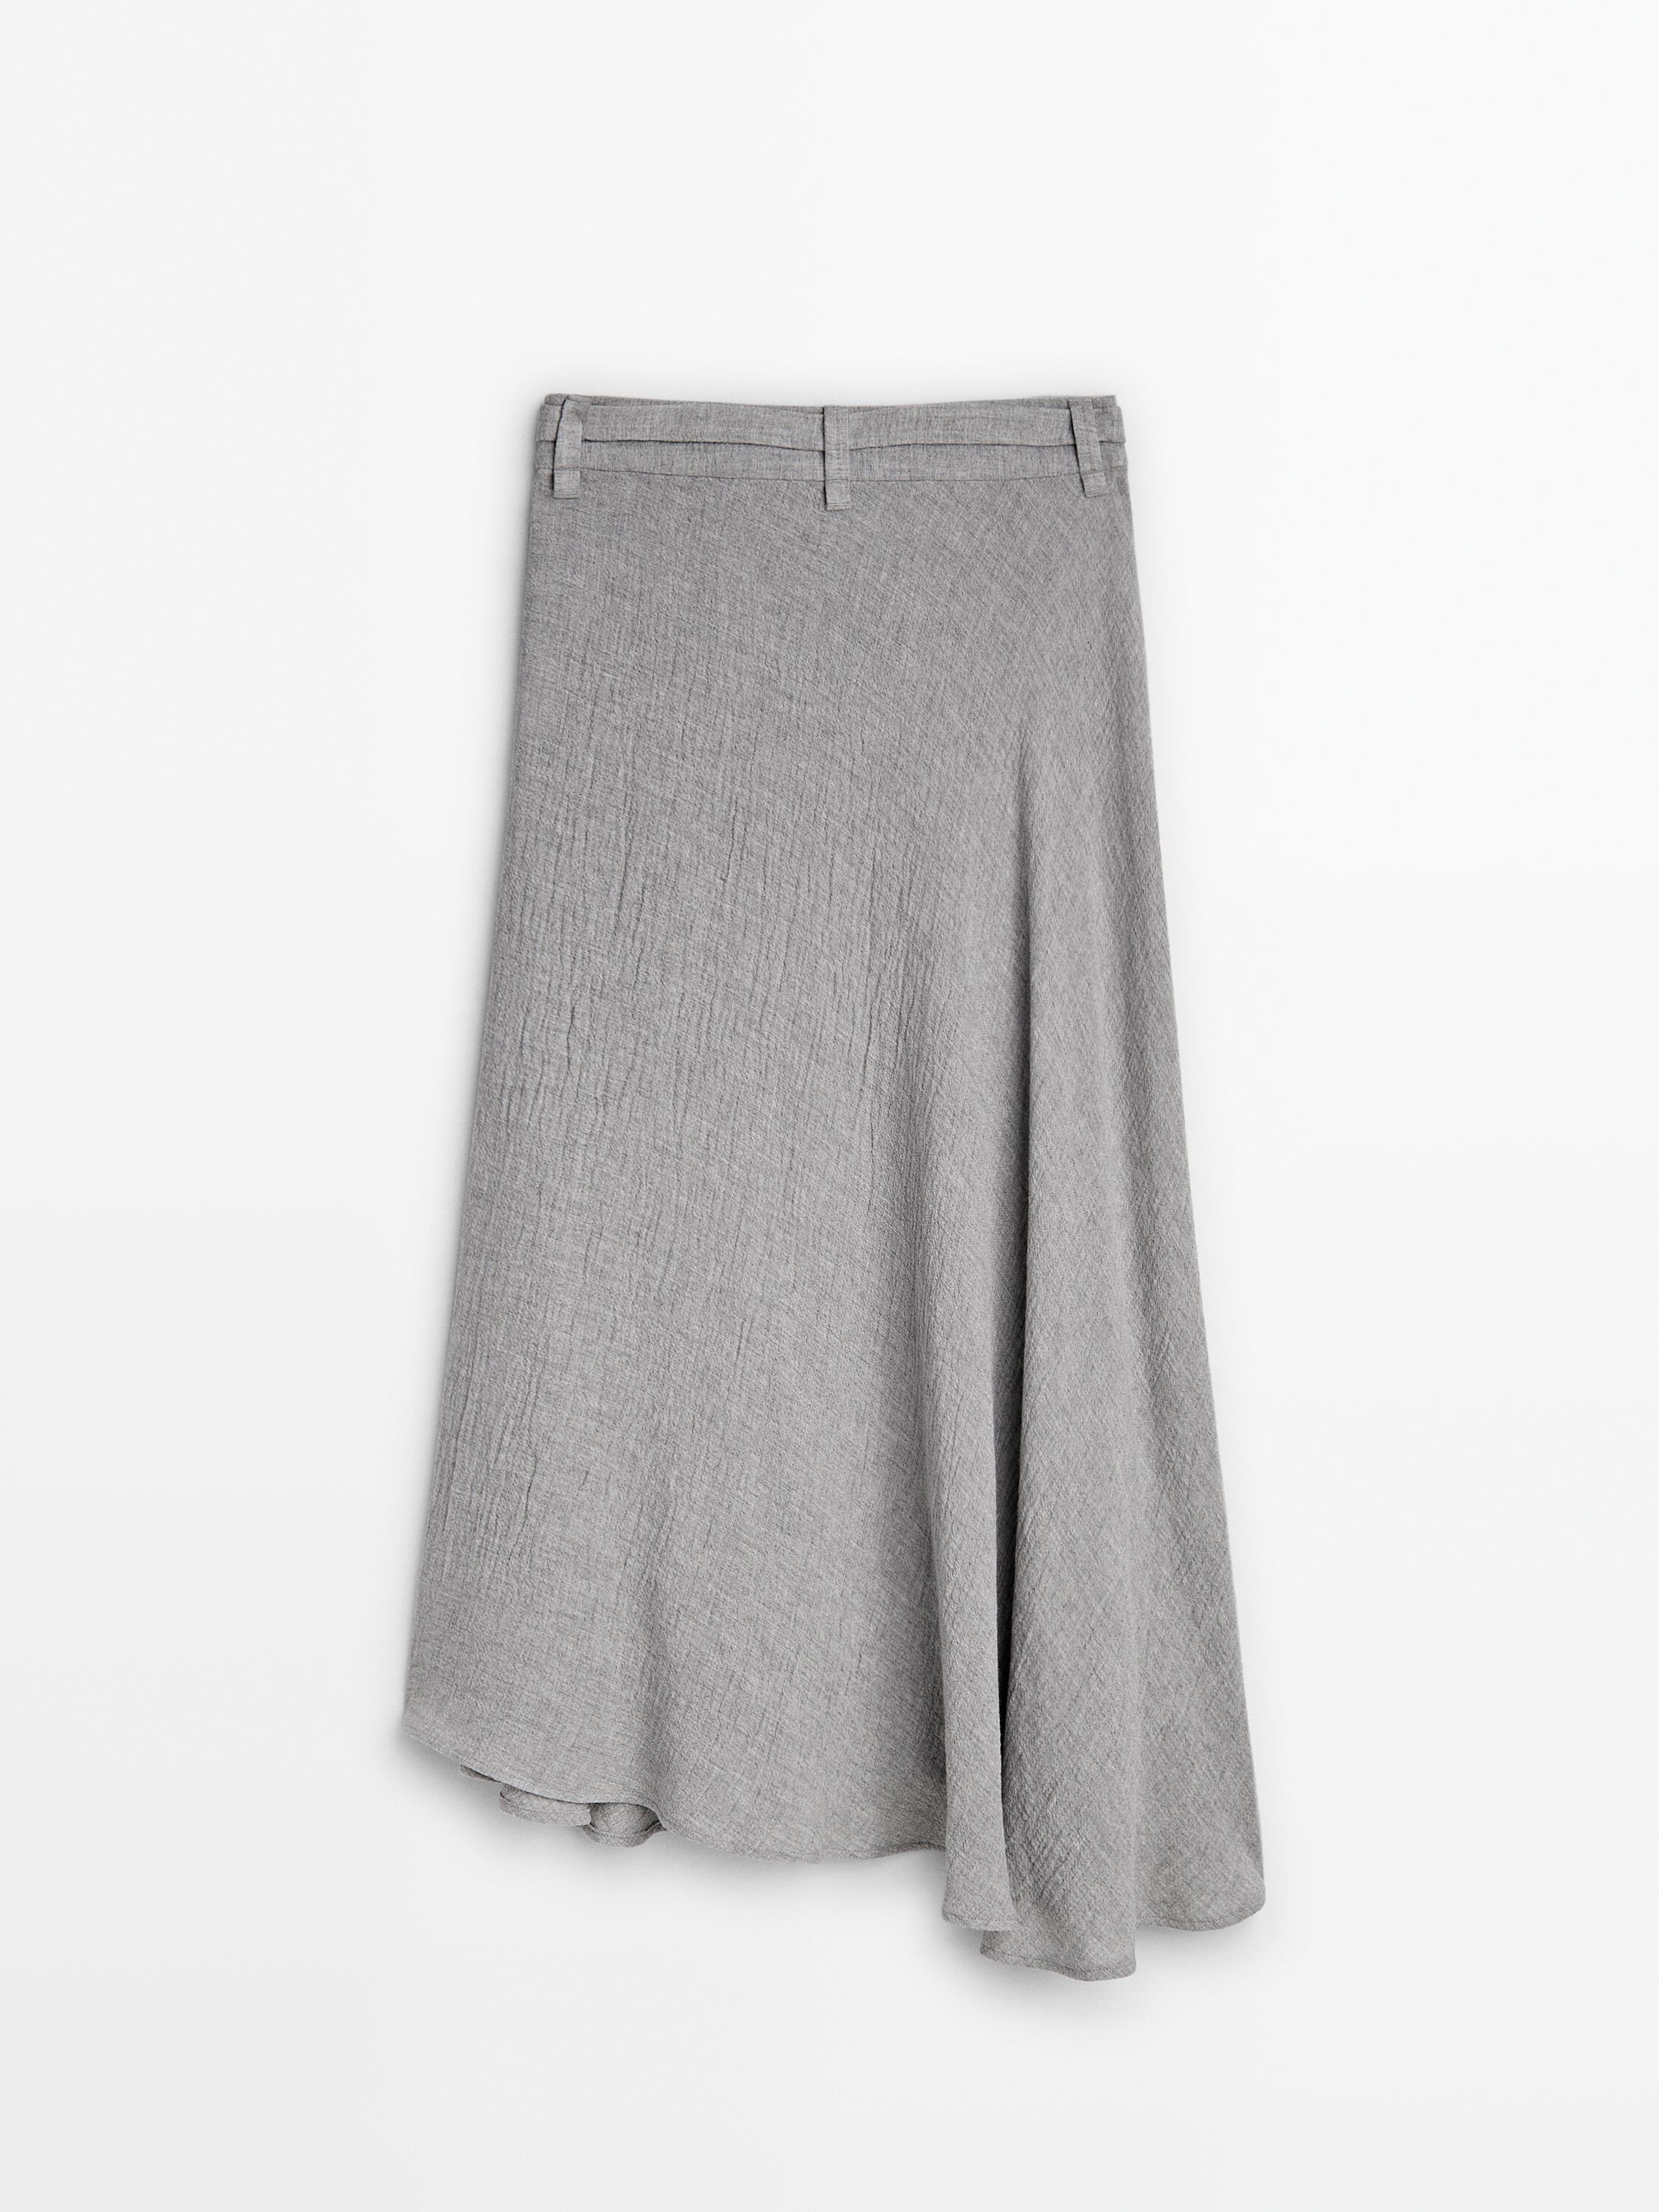 Long flounce skirt with belt